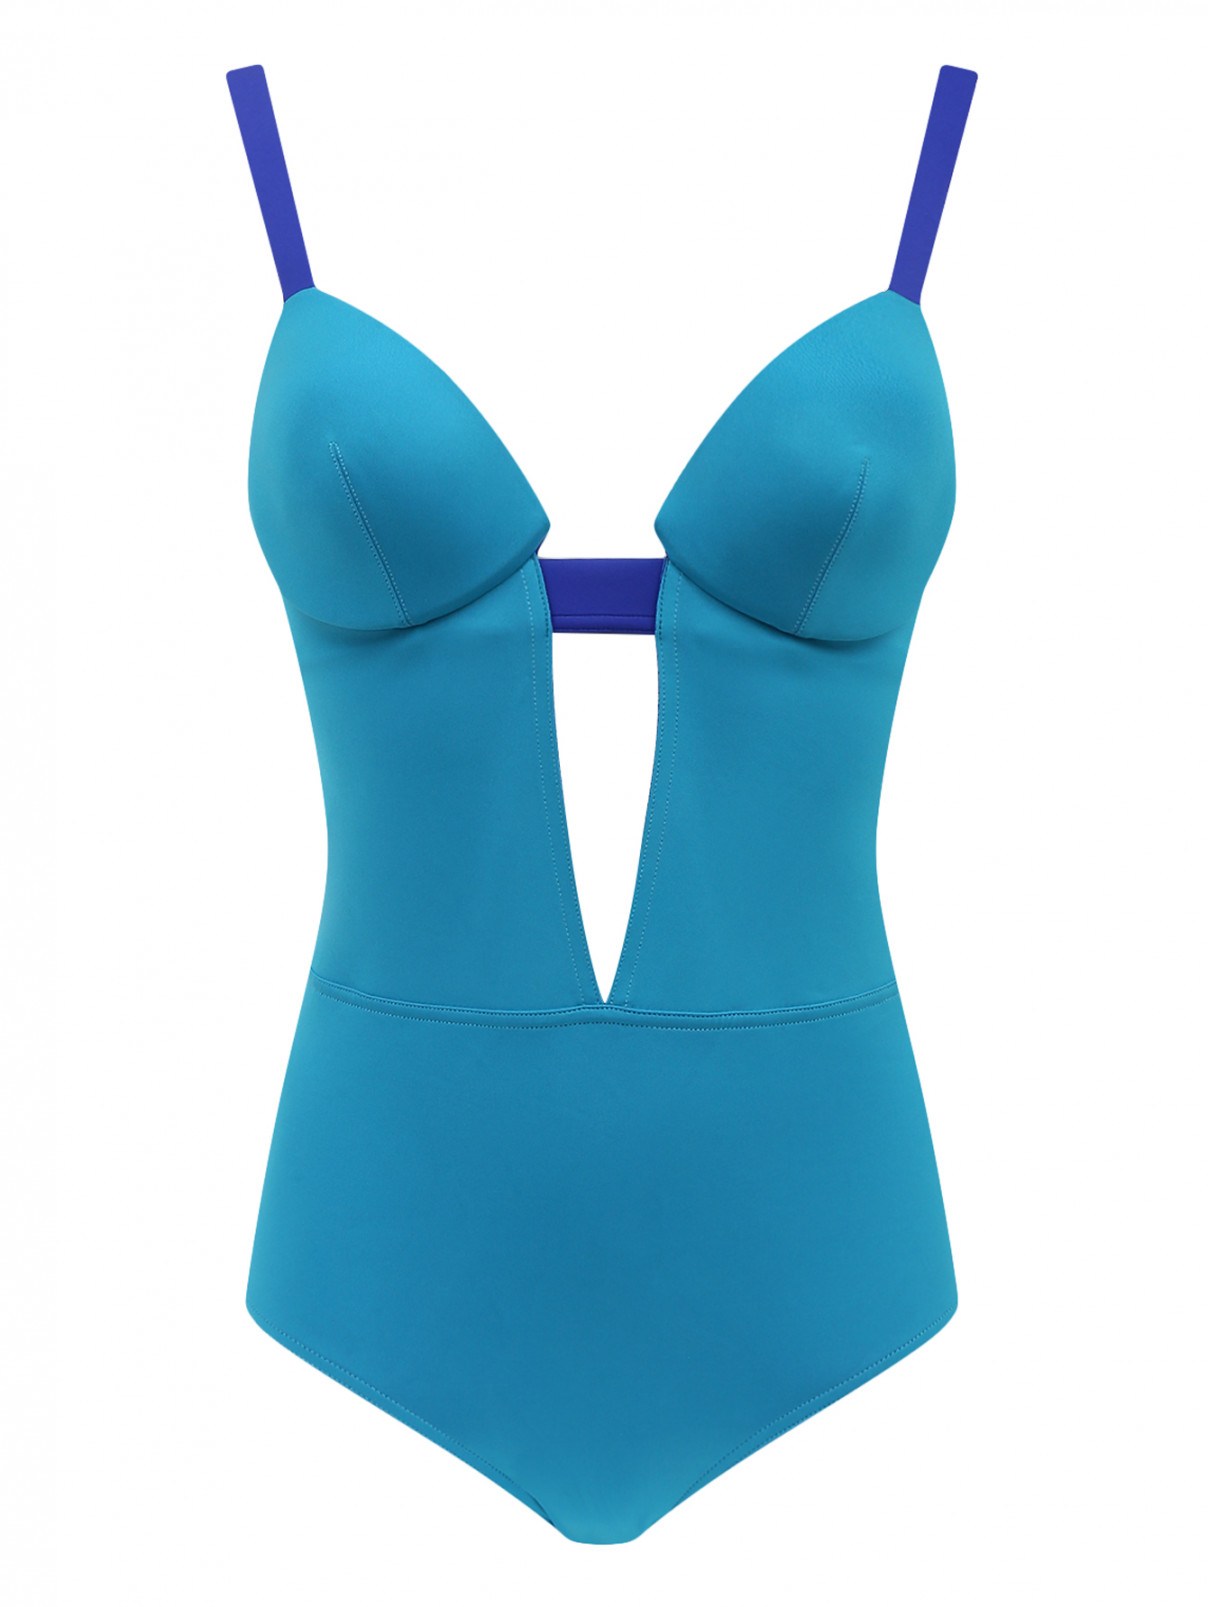 Слитный купальник с контрастной отделкой La Perla  –  Общий вид  – Цвет:  Синий